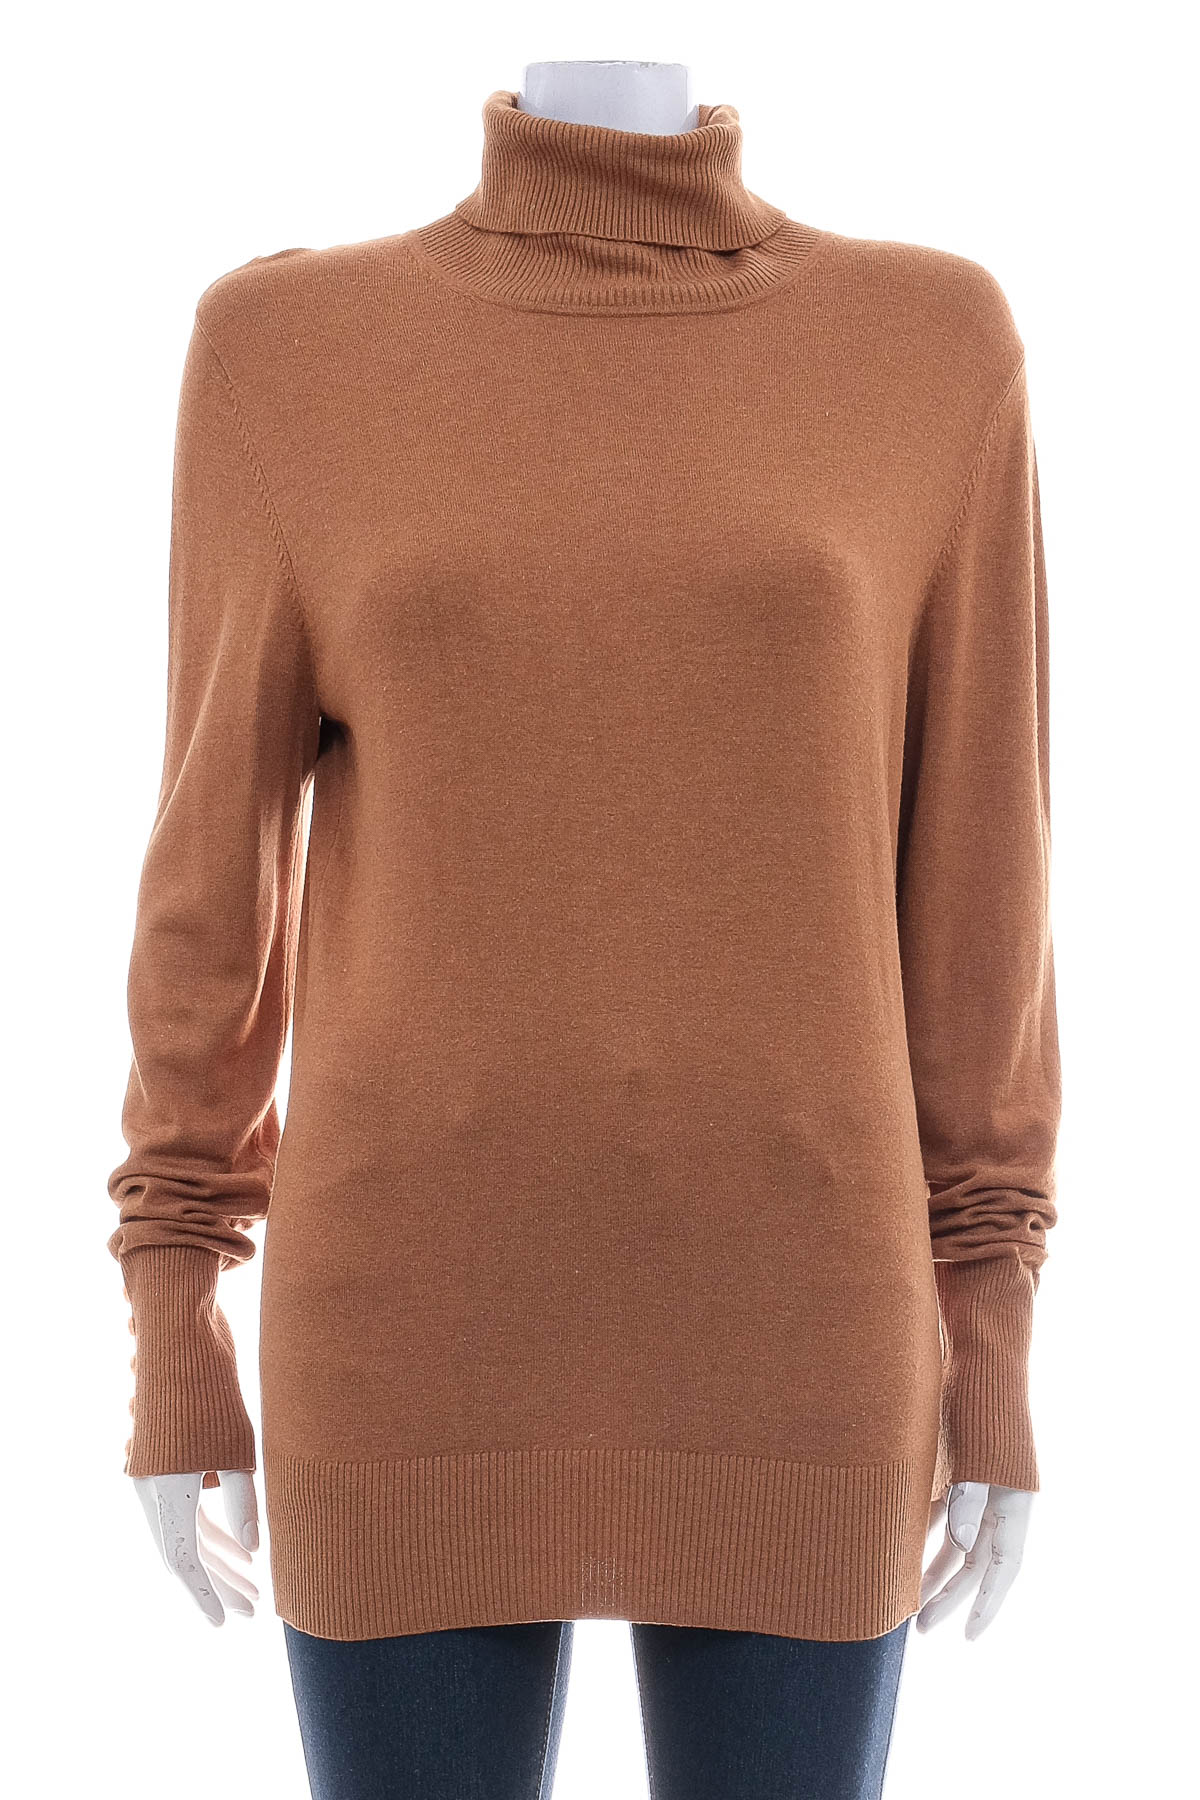 Women's sweater - In Linea - 0